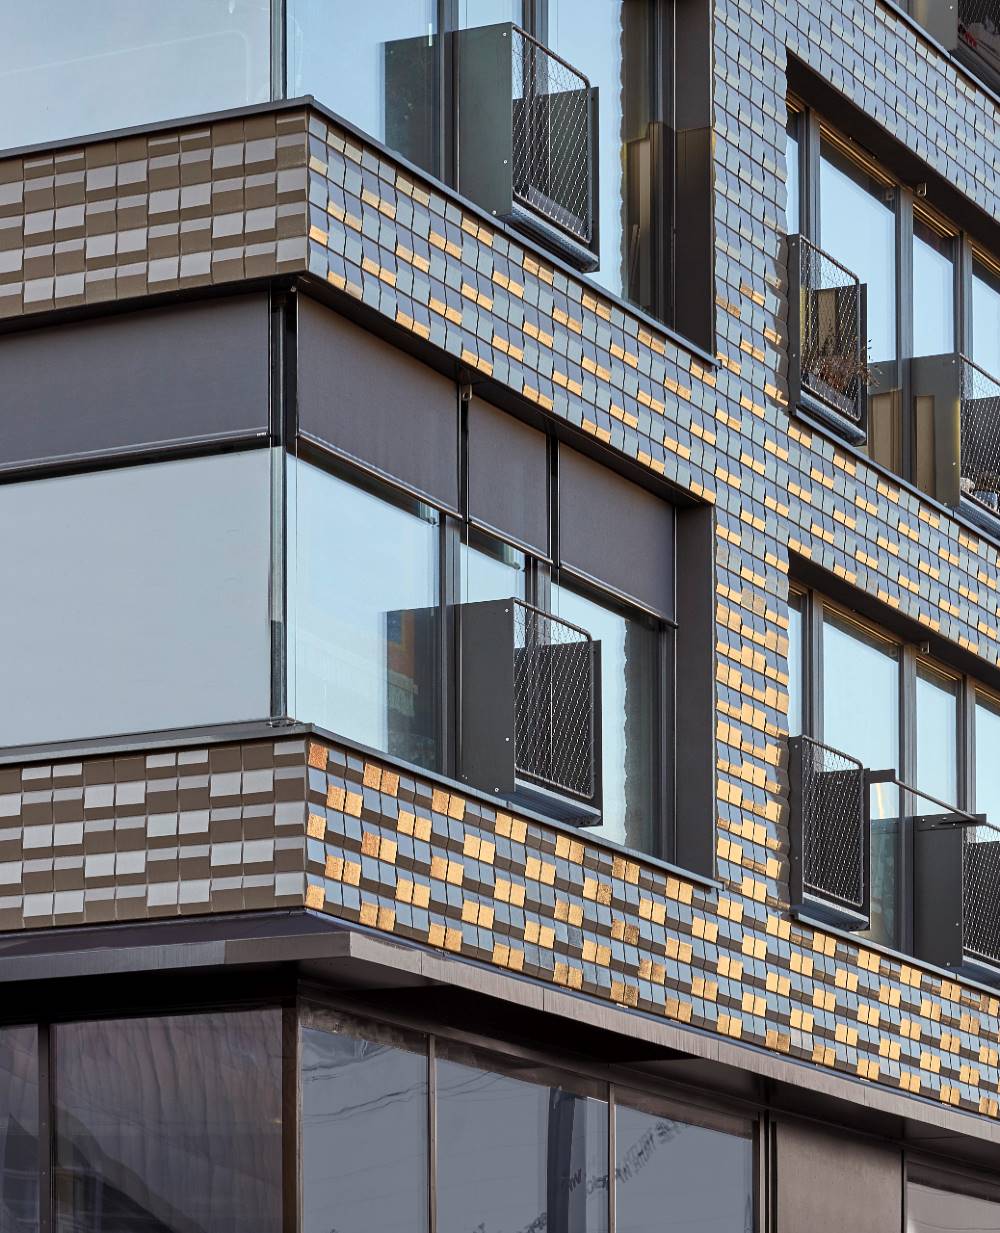 IBeB_Berlin_Motiv_41 Maleni keramički elementi fasade za veliki učinak